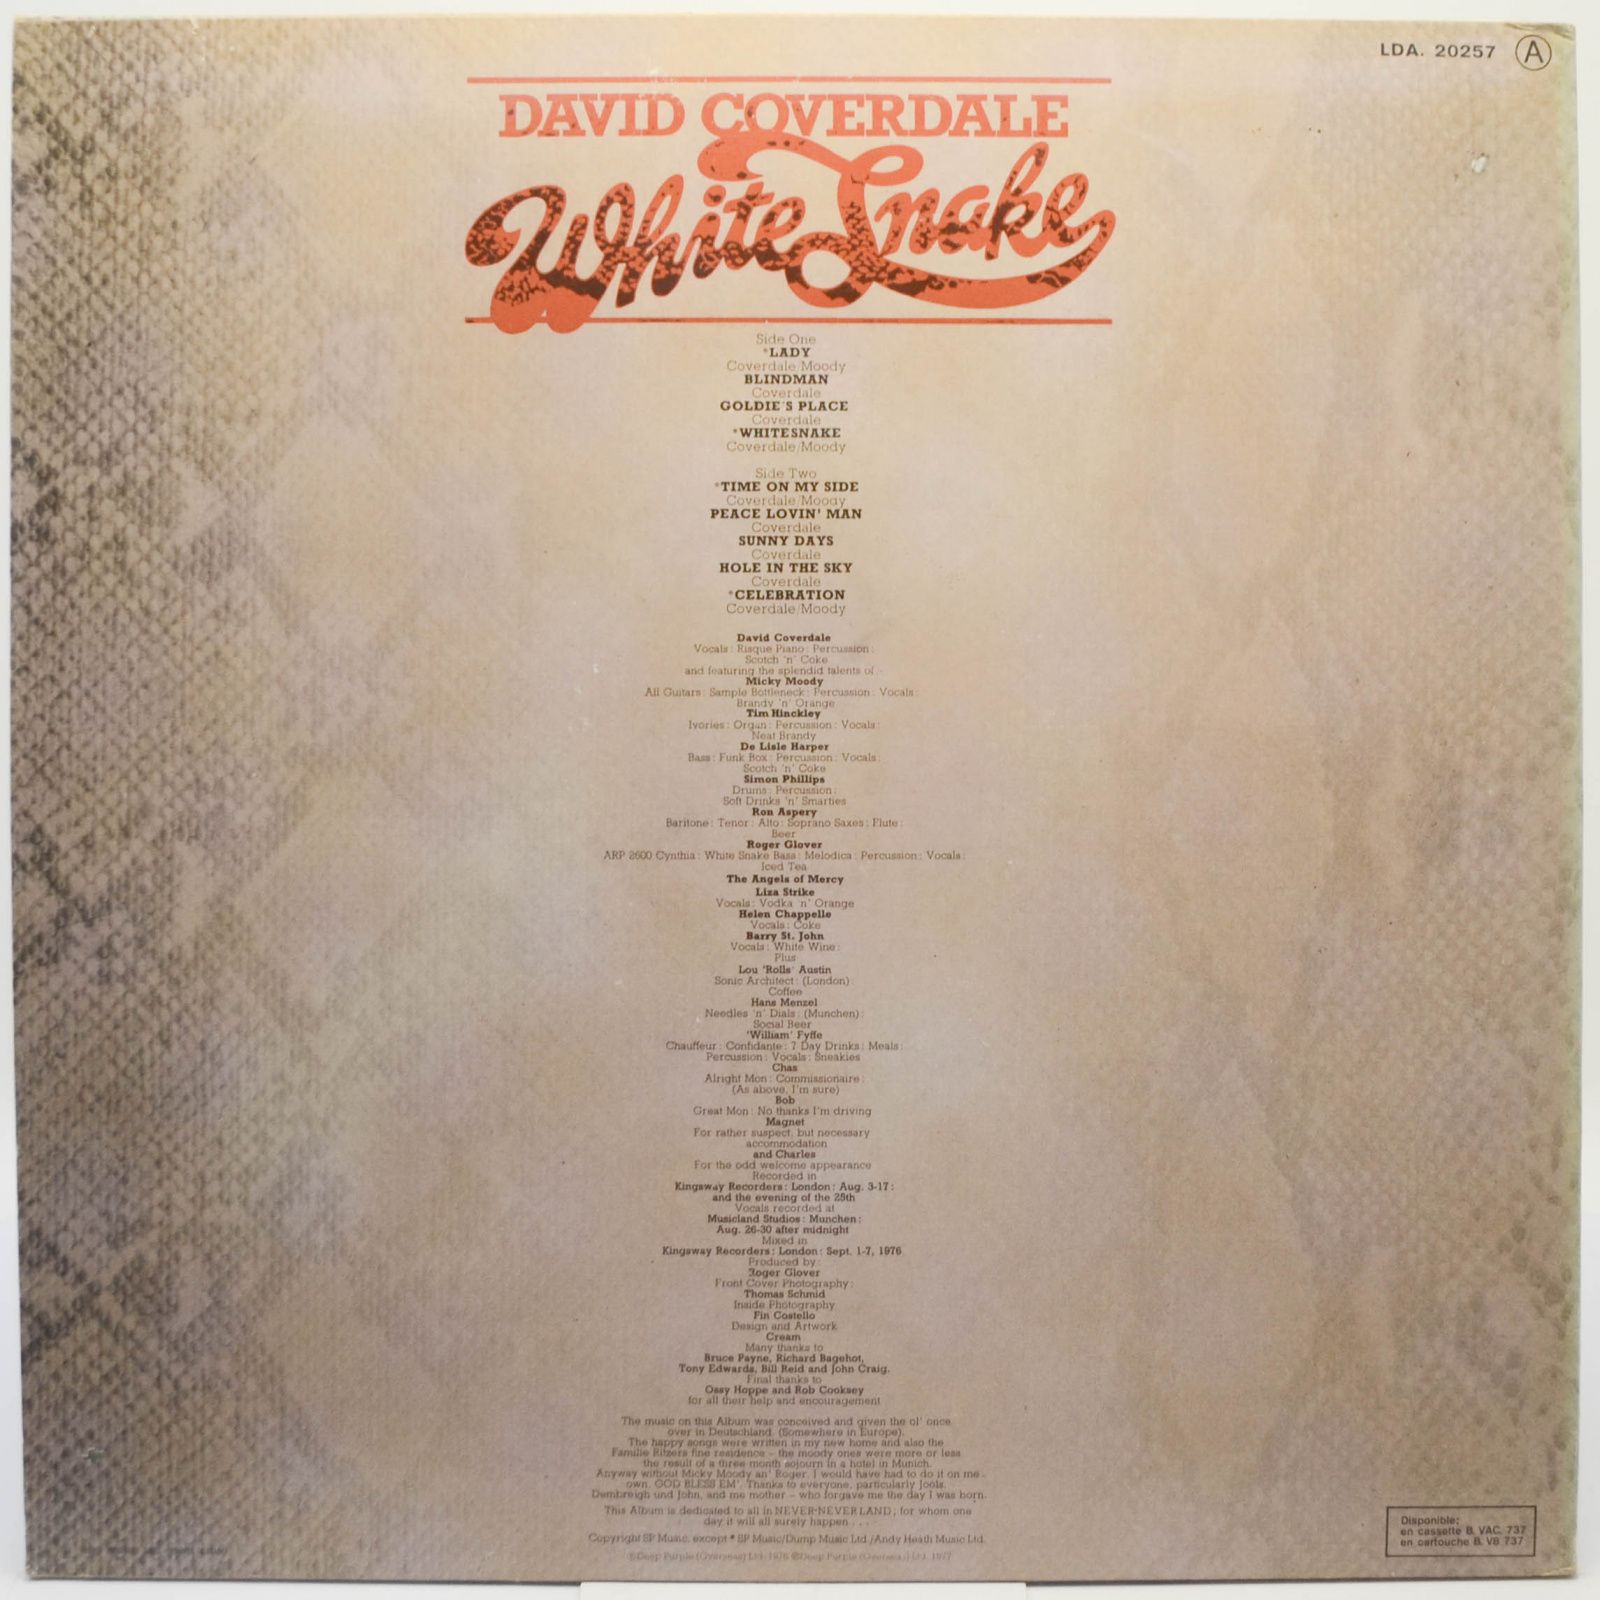 David Coverdale — Whitesnake, 1977